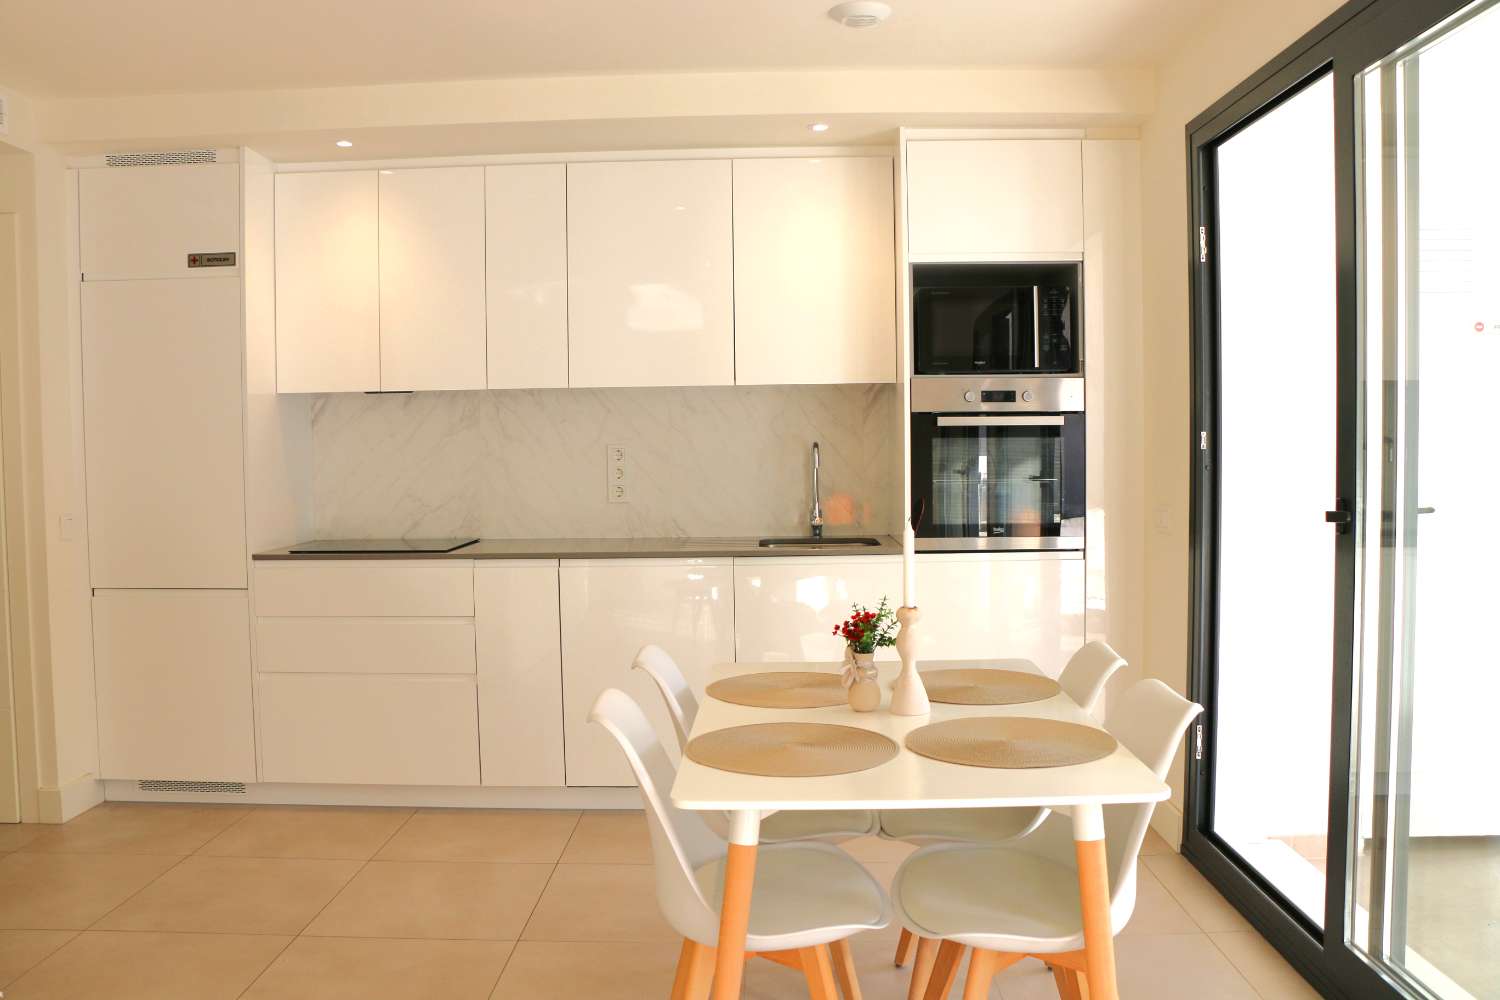 Nieuw luxe afgewerkt appartement in kleinschalig complex voor een heerlijke strand vakantie in Nerja, Zuid Spanje.